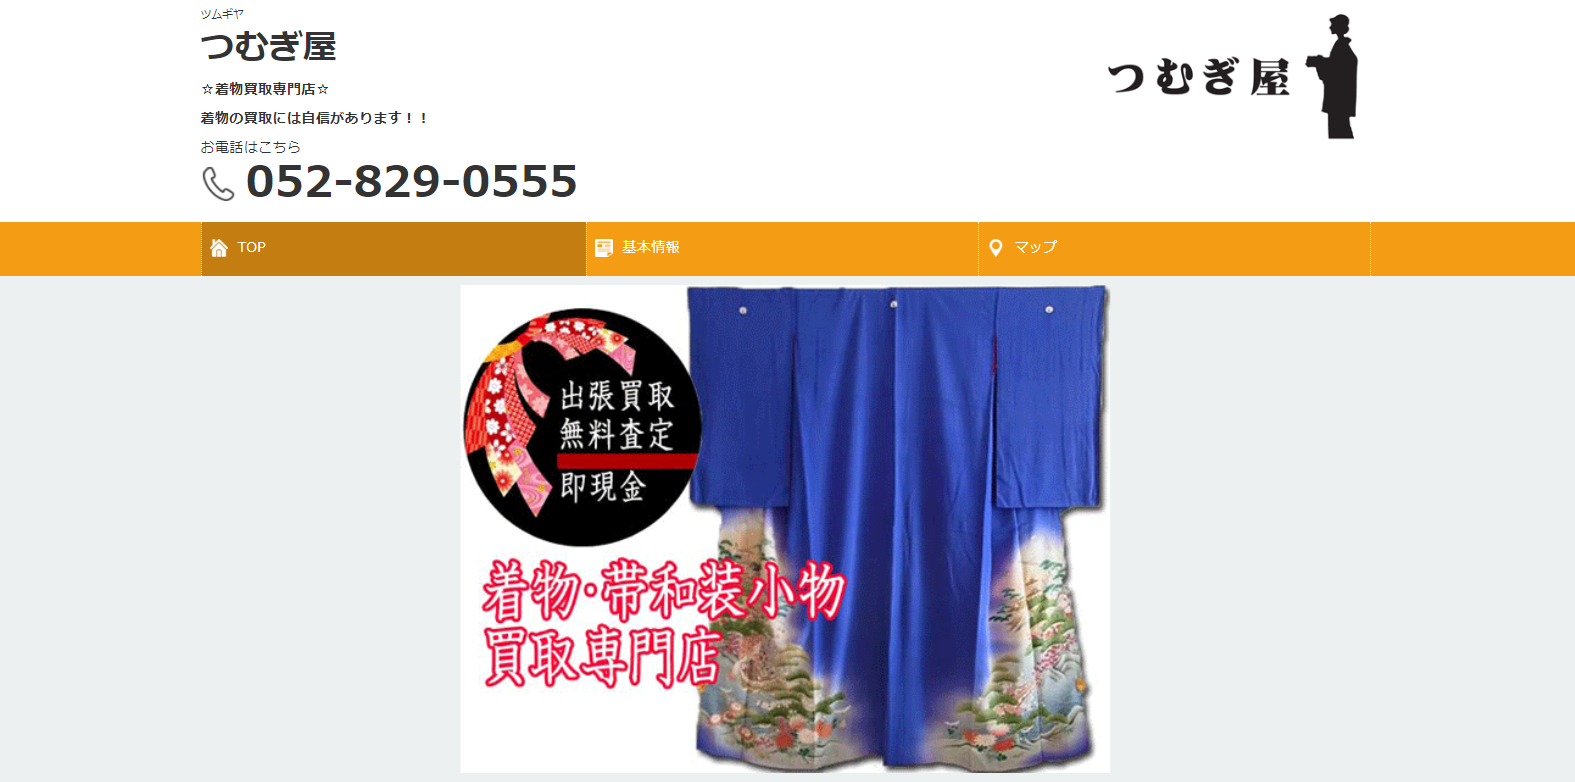 愛知県名古屋市でおすすめの着物買取の口コミ評判